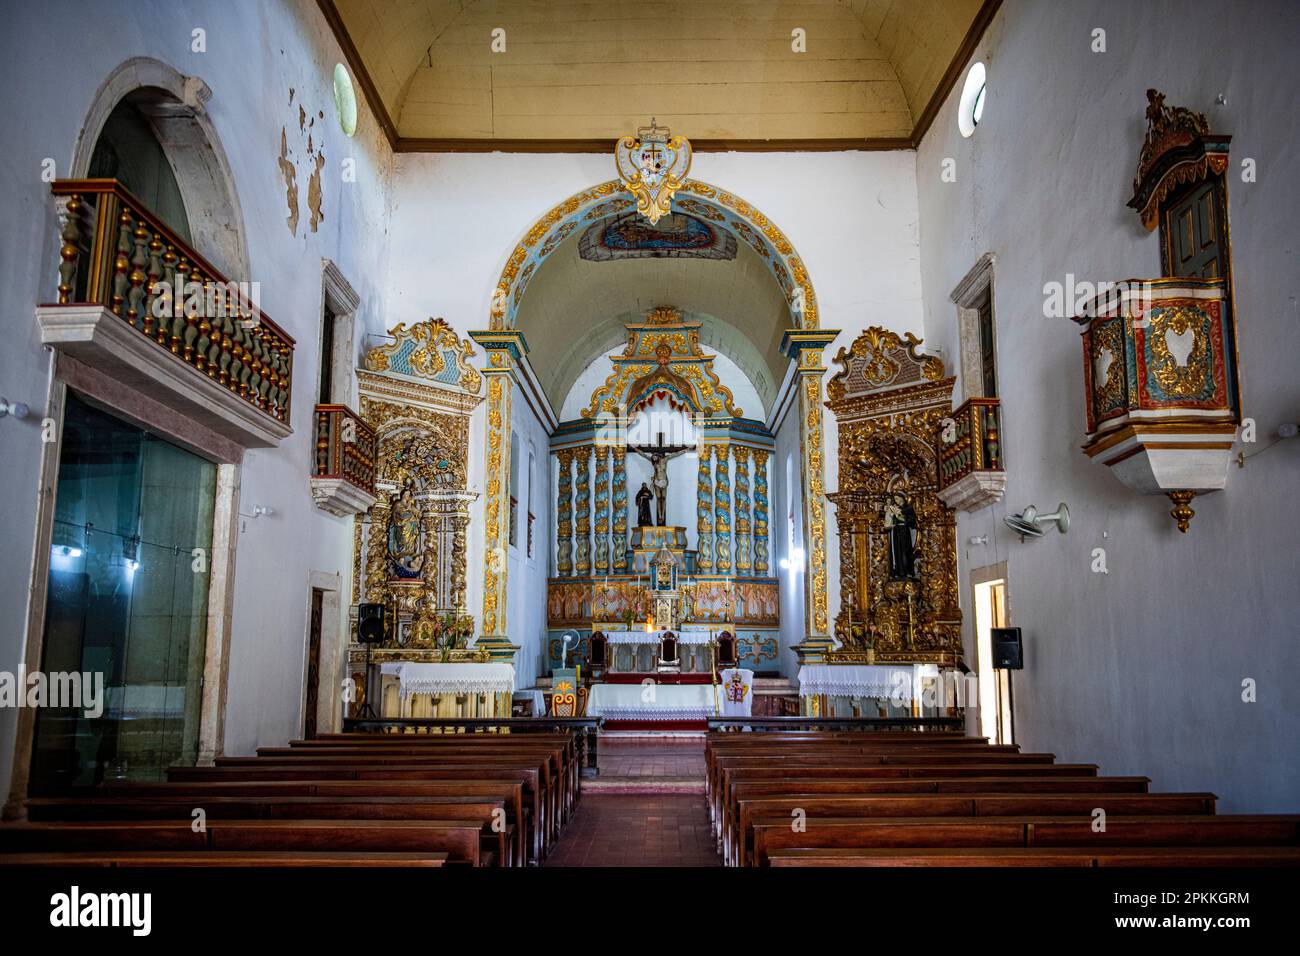 Église de Sao Francisco, place de Sao Francisco, site classé au patrimoine mondial de l'UNESCO, Sao Cristovao, Sergipe, Brésil, Amérique du Sud Banque D'Images